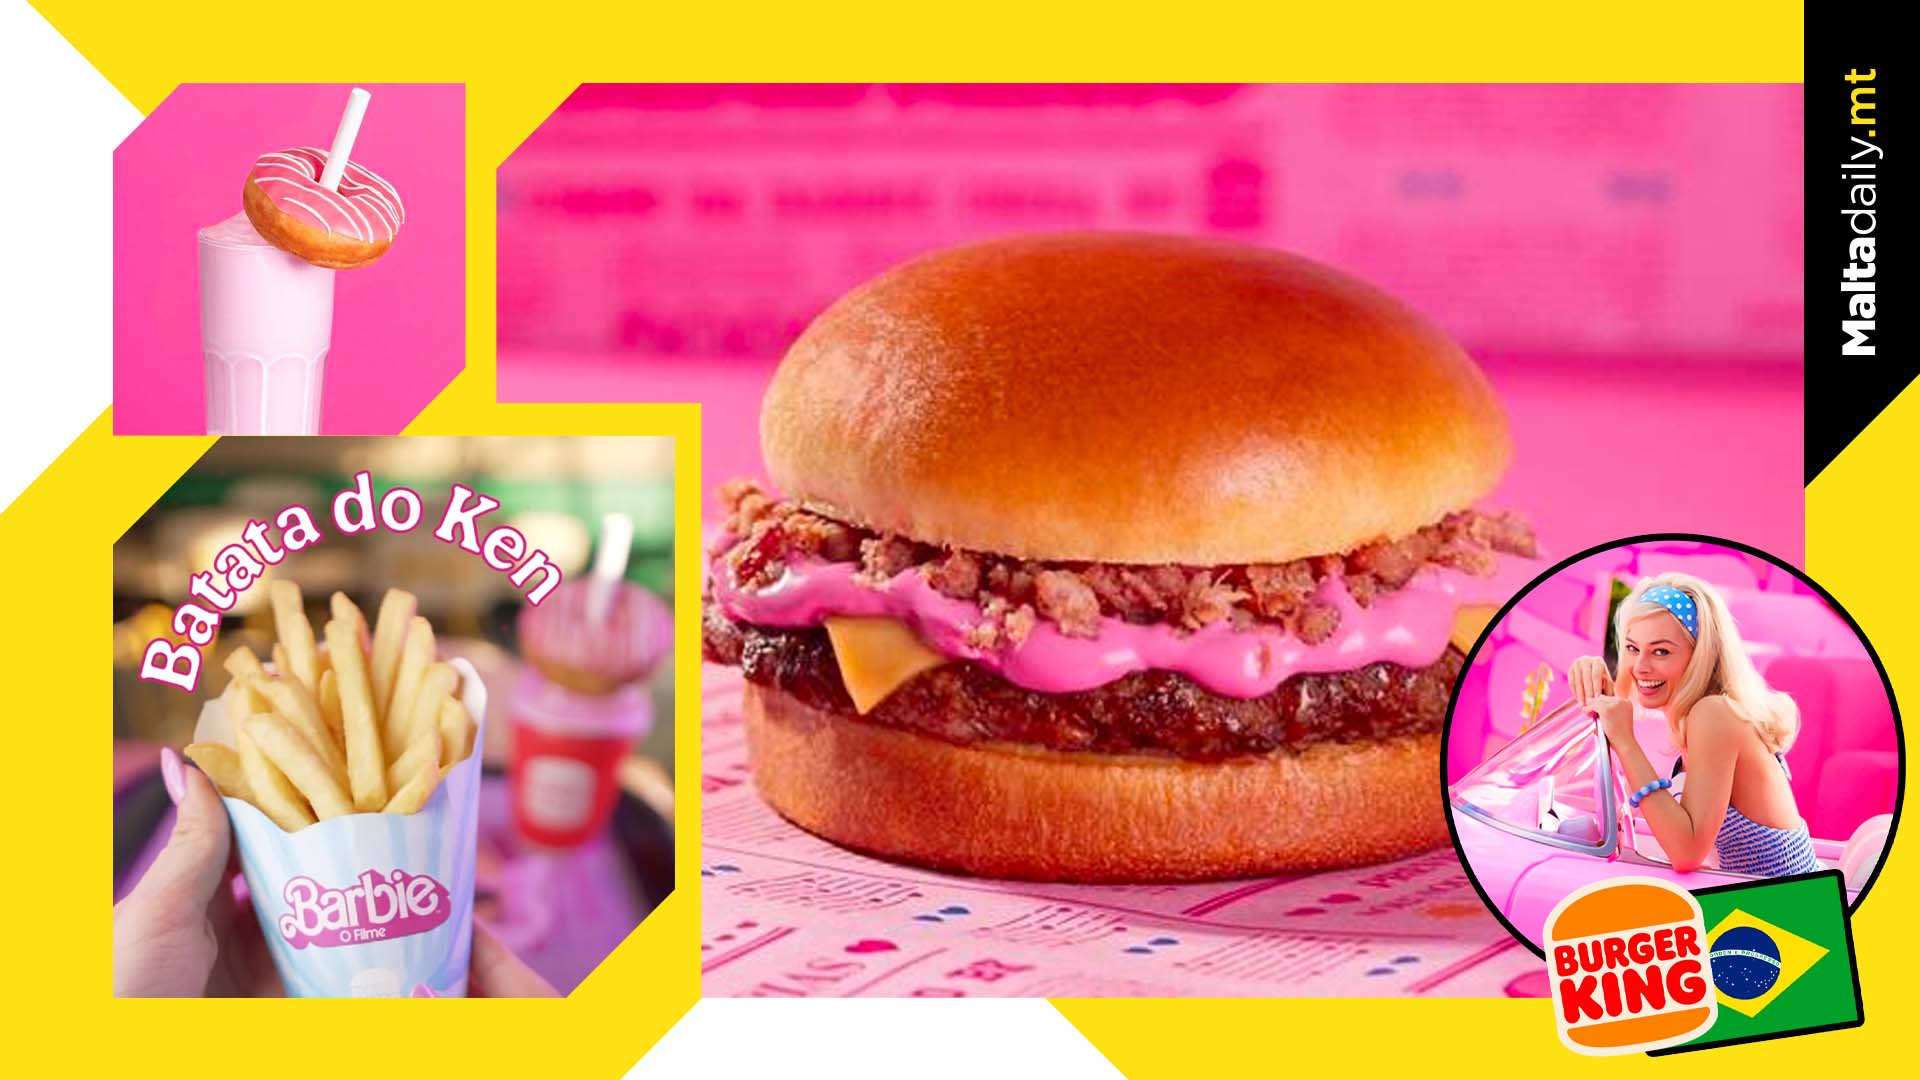 Burger King Brazil Releases Pink Barbie Burger